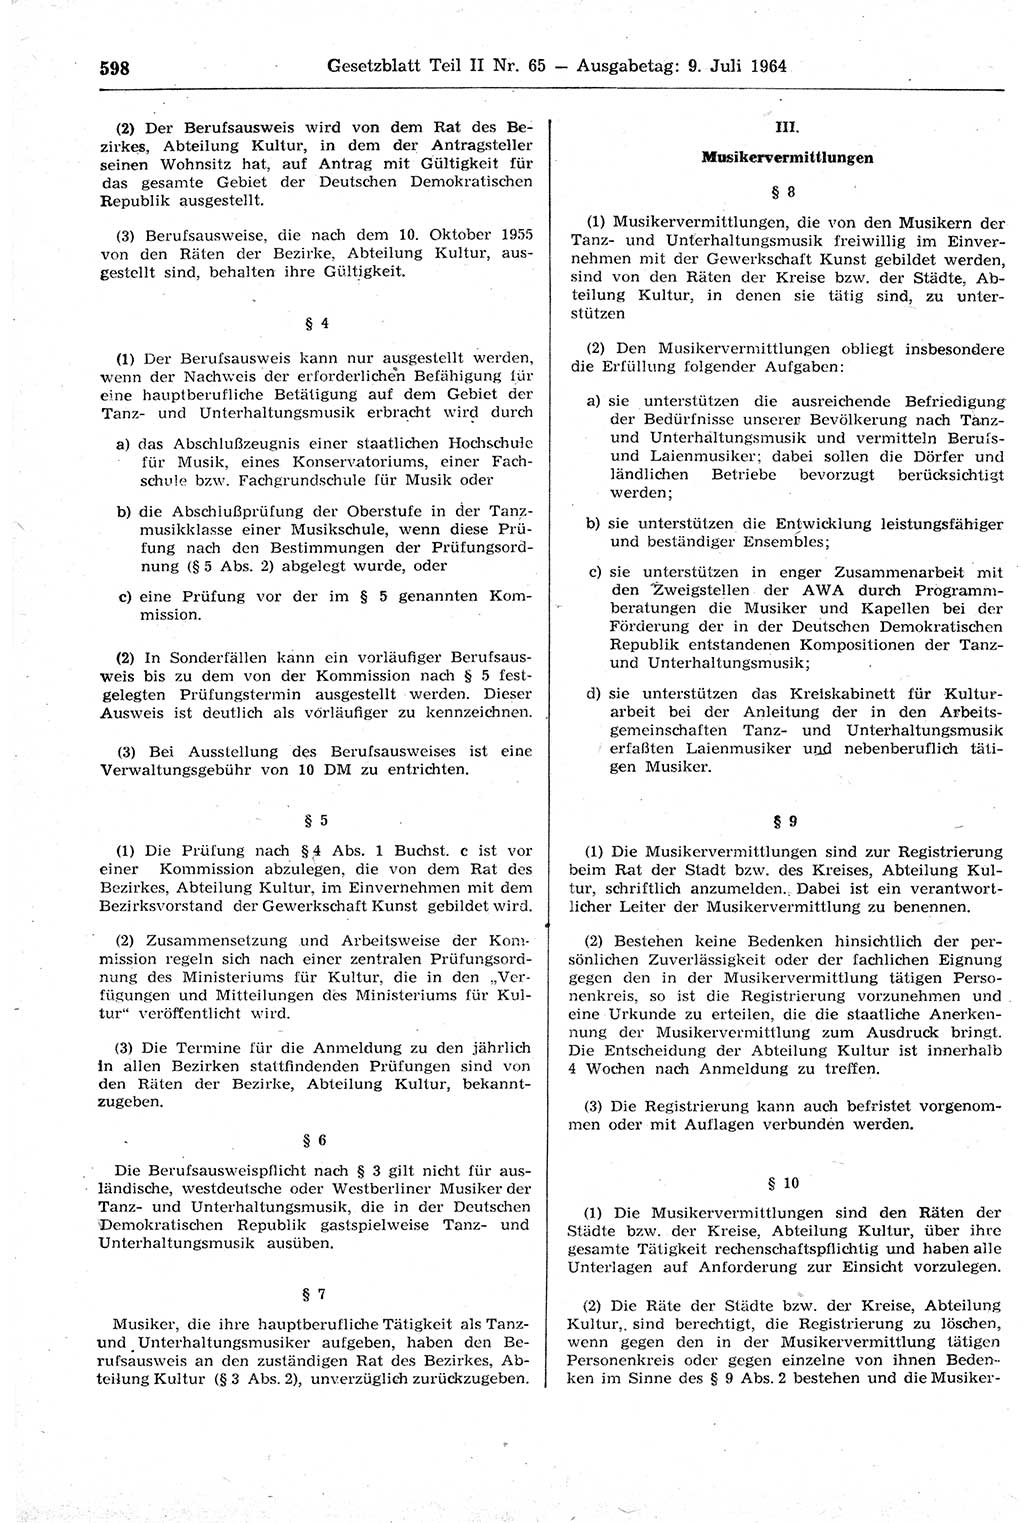 Gesetzblatt (GBl.) der Deutschen Demokratischen Republik (DDR) Teil ⅠⅠ 1964, Seite 598 (GBl. DDR ⅠⅠ 1964, S. 598)